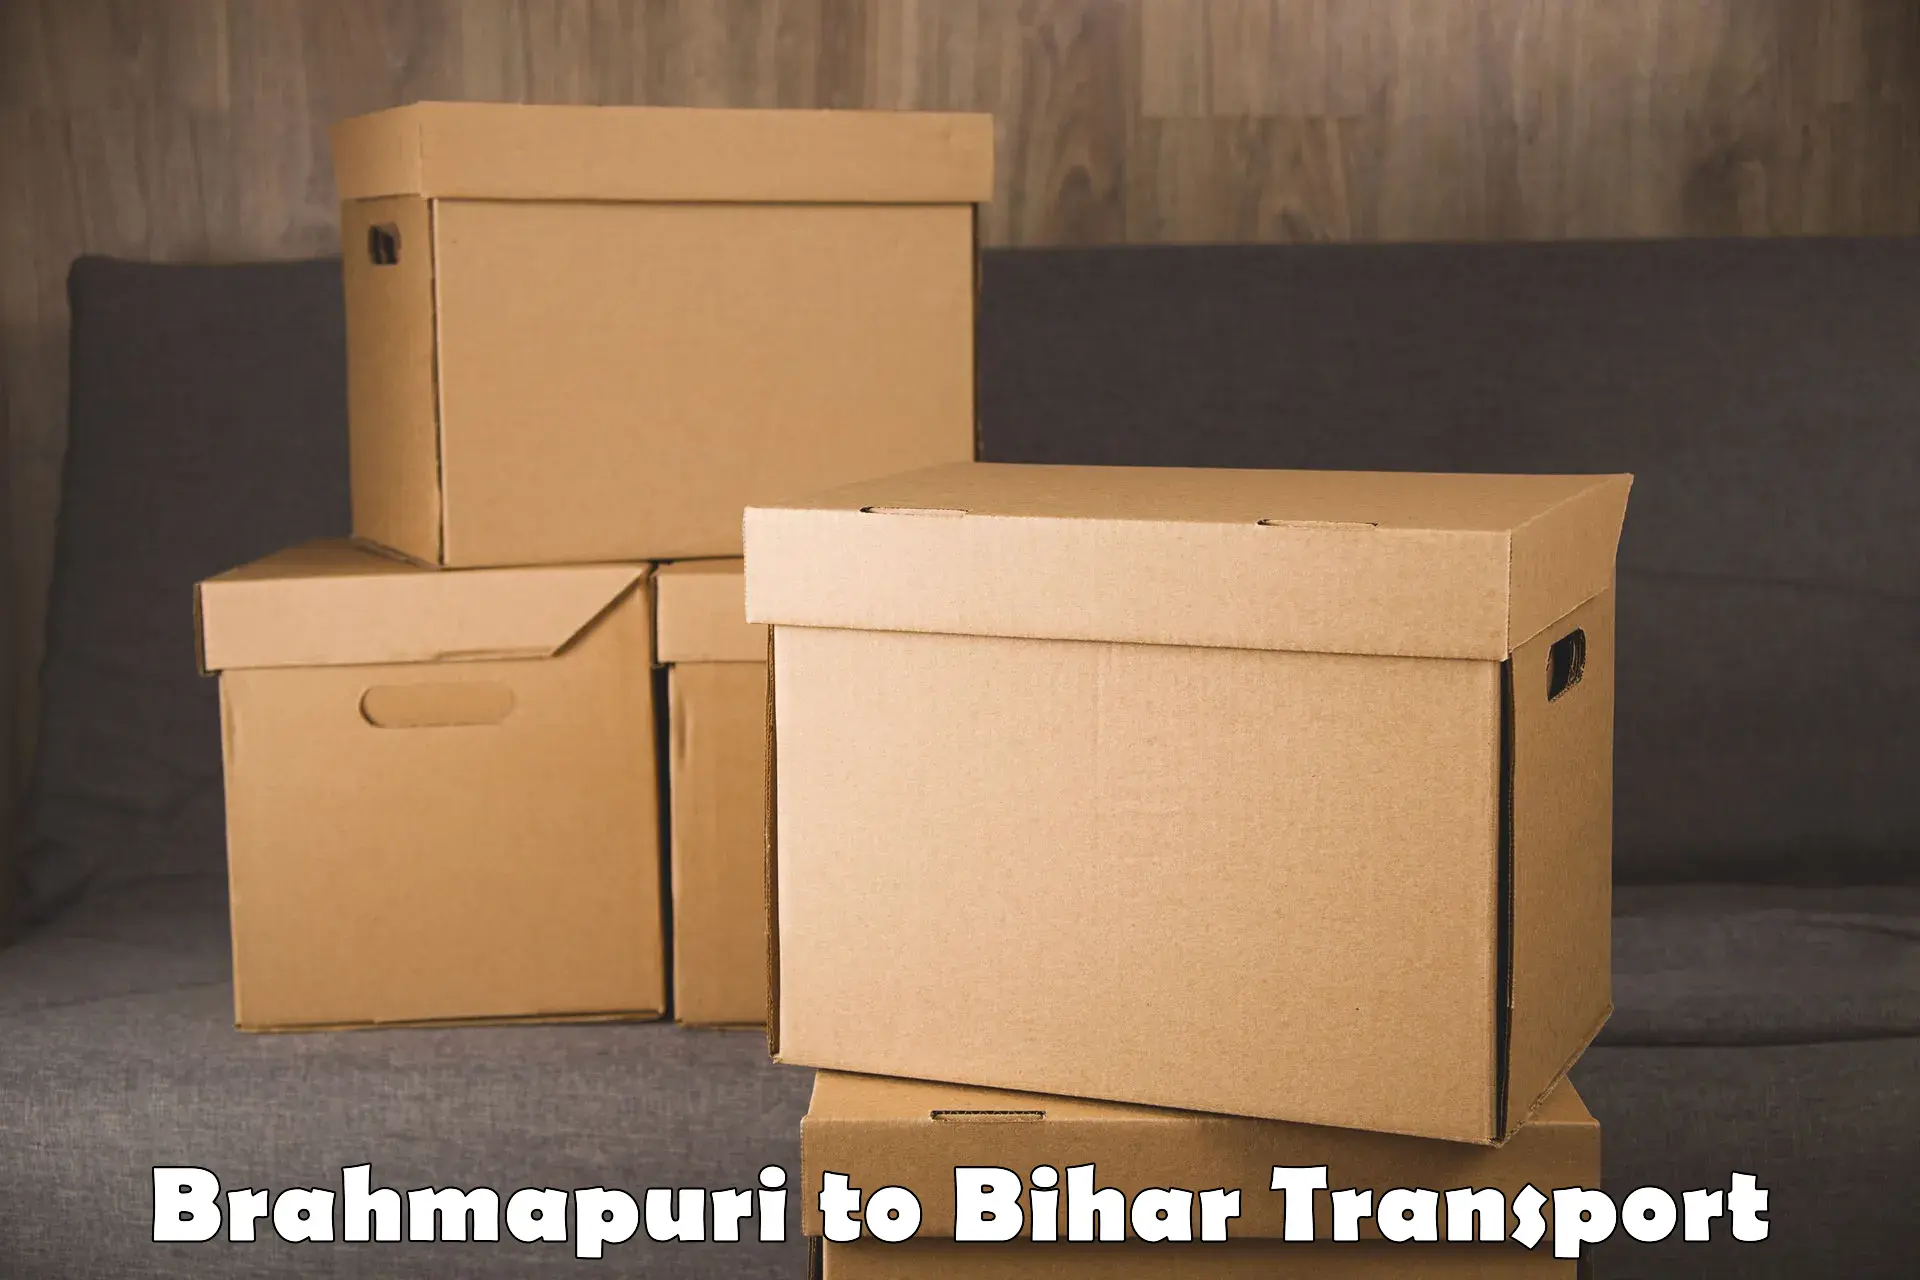 Bike shipping service Brahmapuri to Aurangabad Bihar